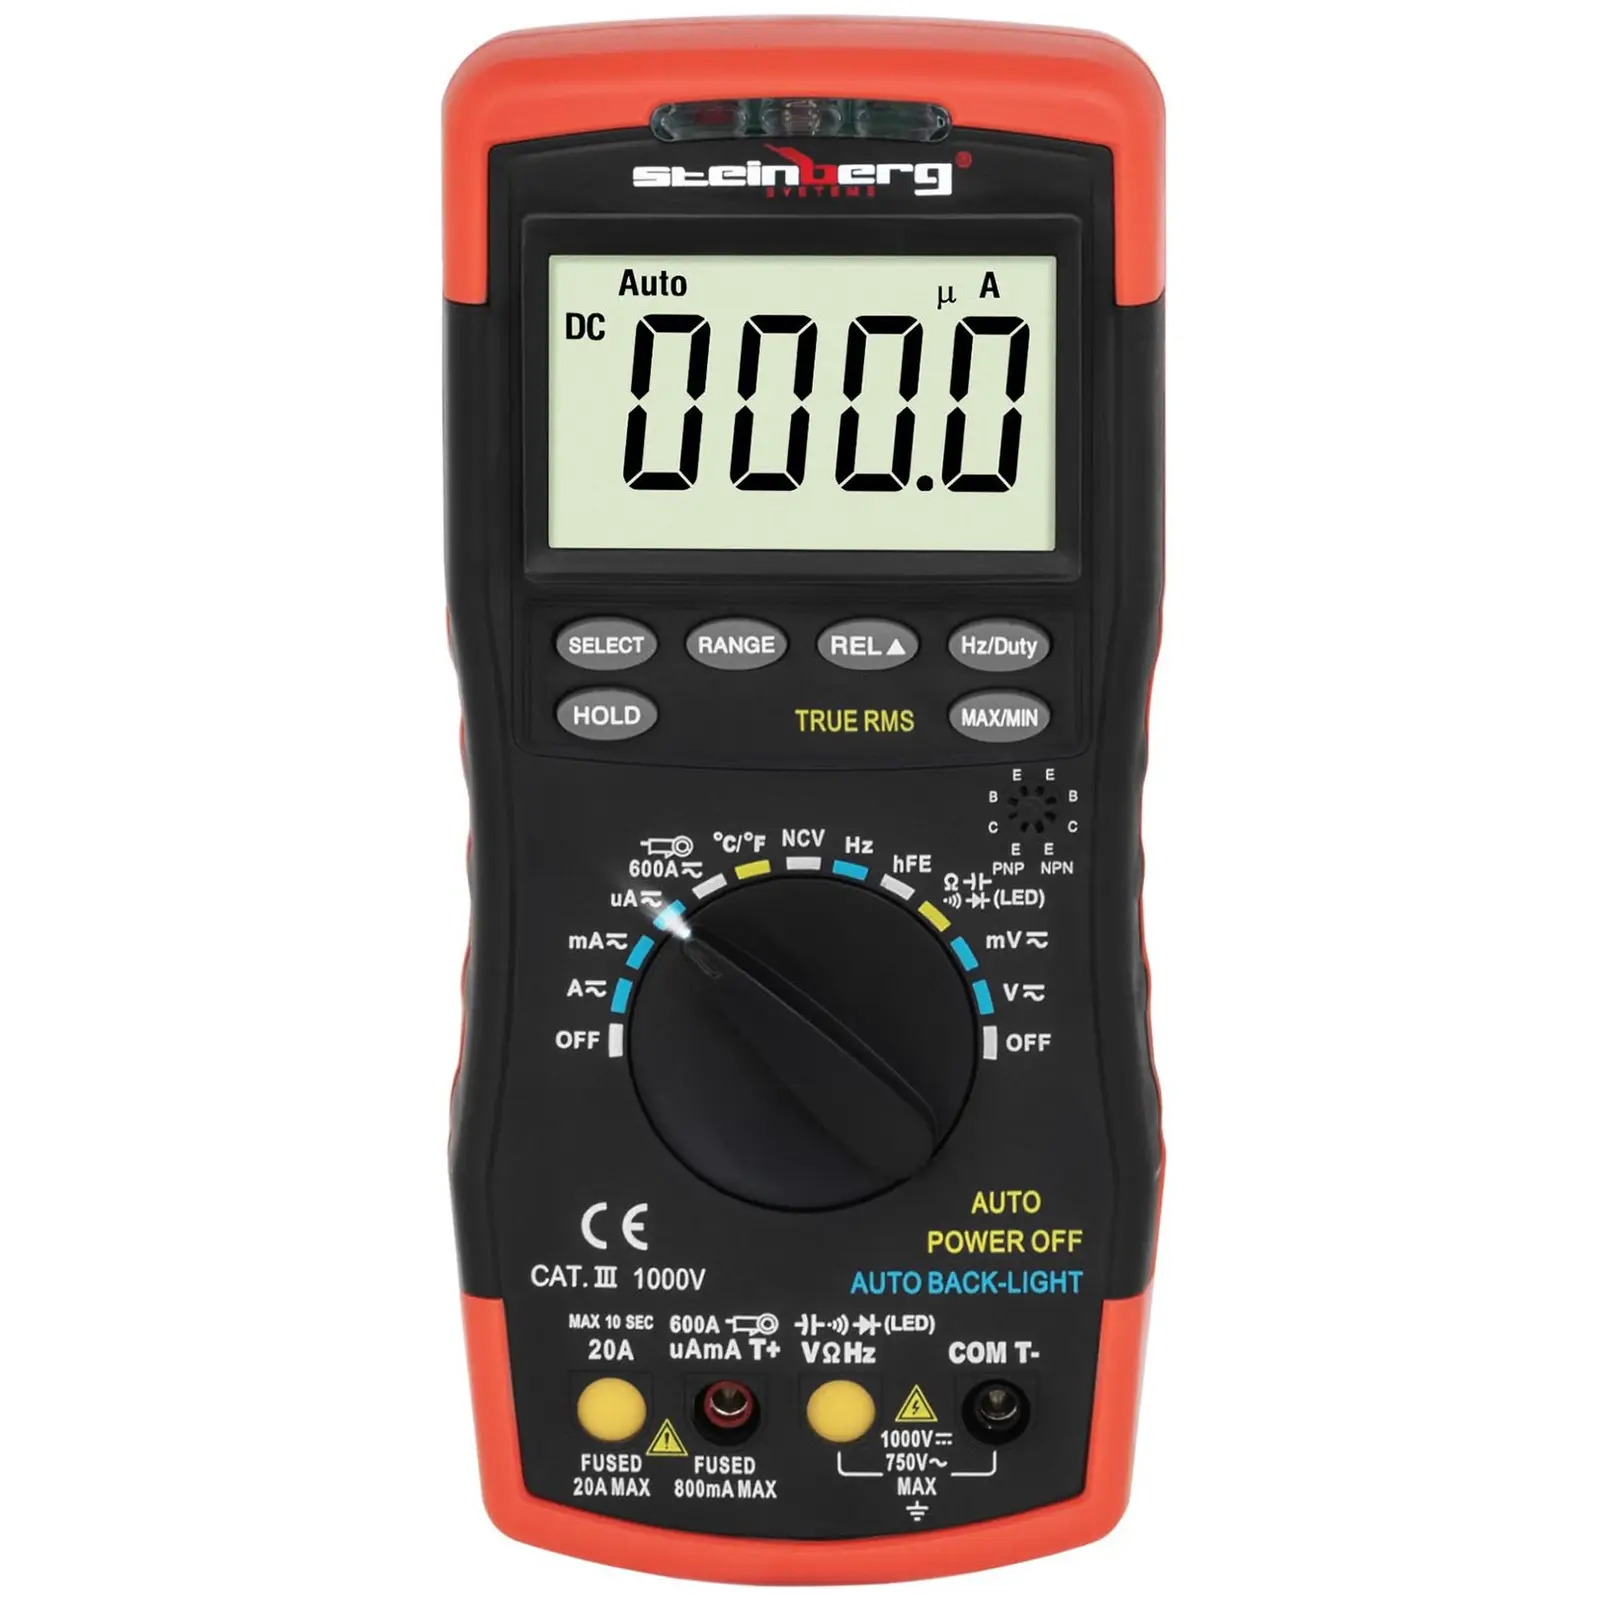 Multimètre - Capacité d’affichage de 6 000 valeurs - Détection sans contact de la tension (NCV) - Test de transistor hFE - Mesure de température - TrueRMS